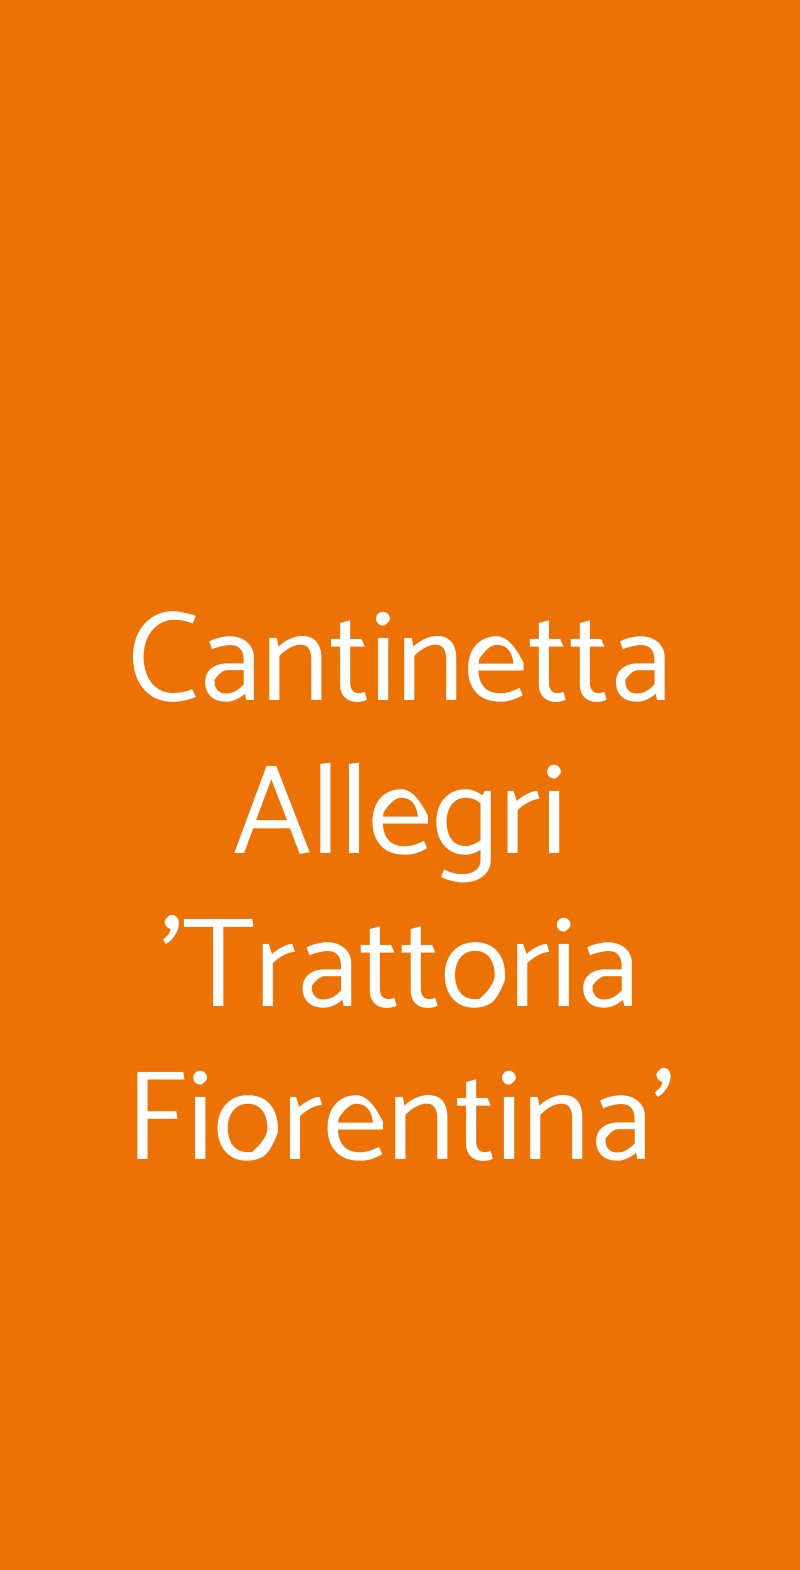 Cantinetta Allegri 'Trattoria Fiorentina' Firenze menù 1 pagina